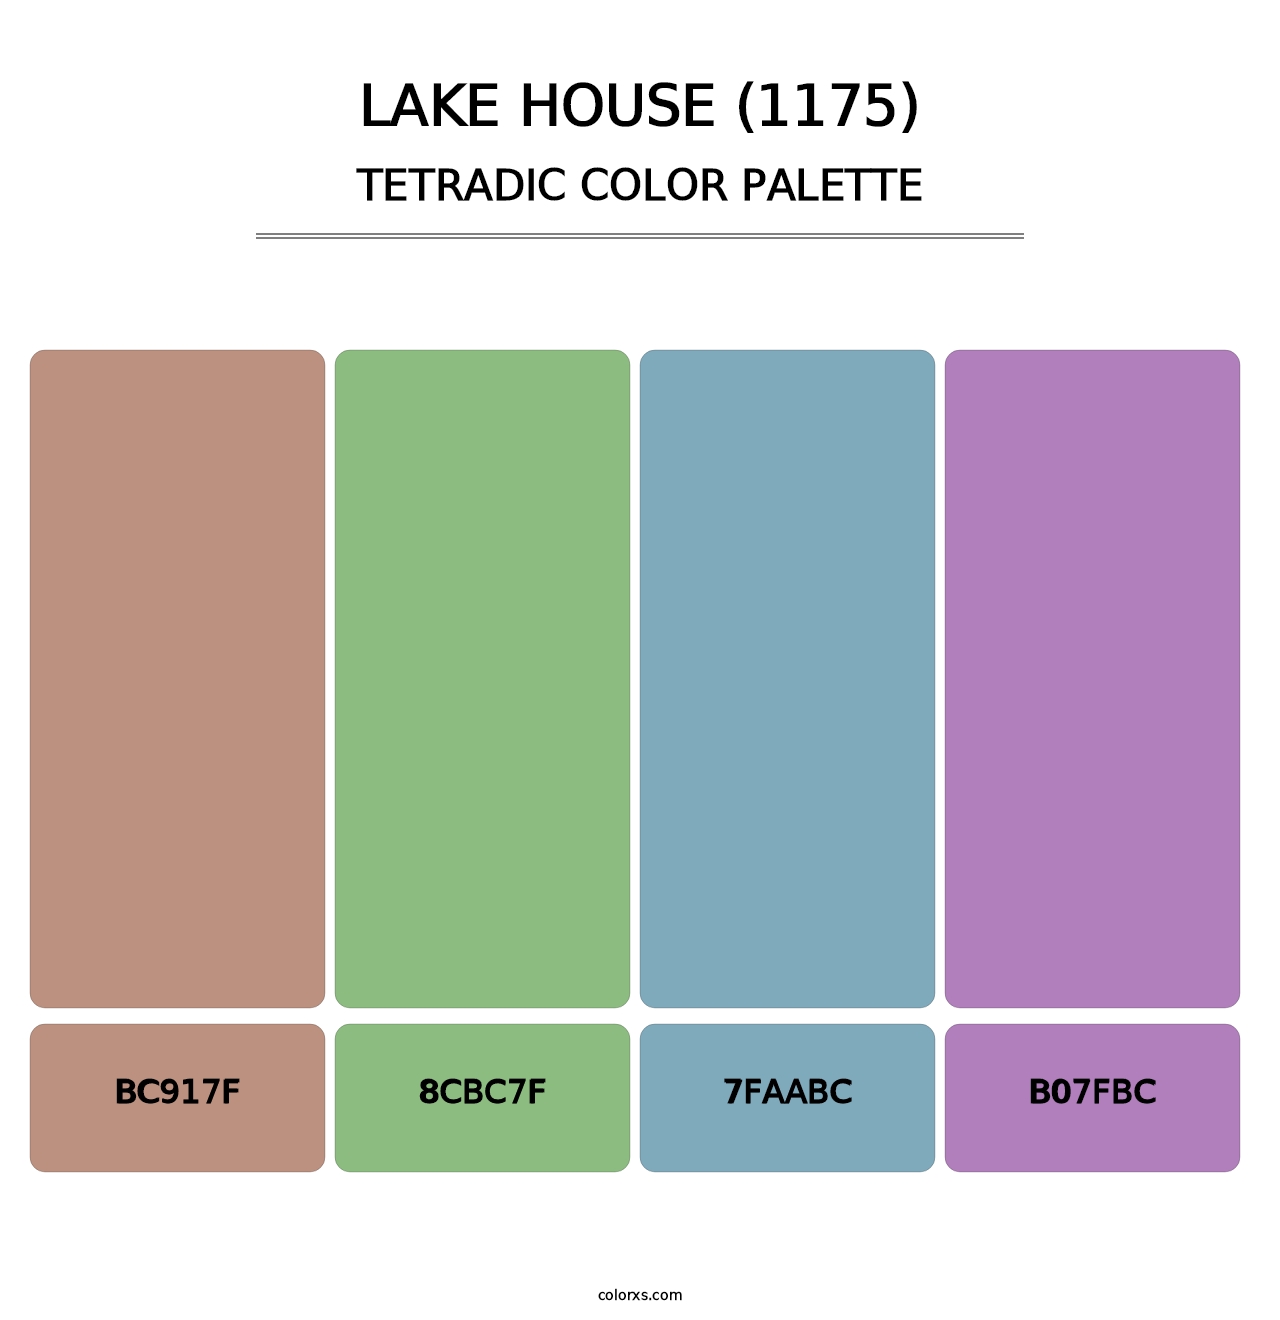 Lake House (1175) - Tetradic Color Palette